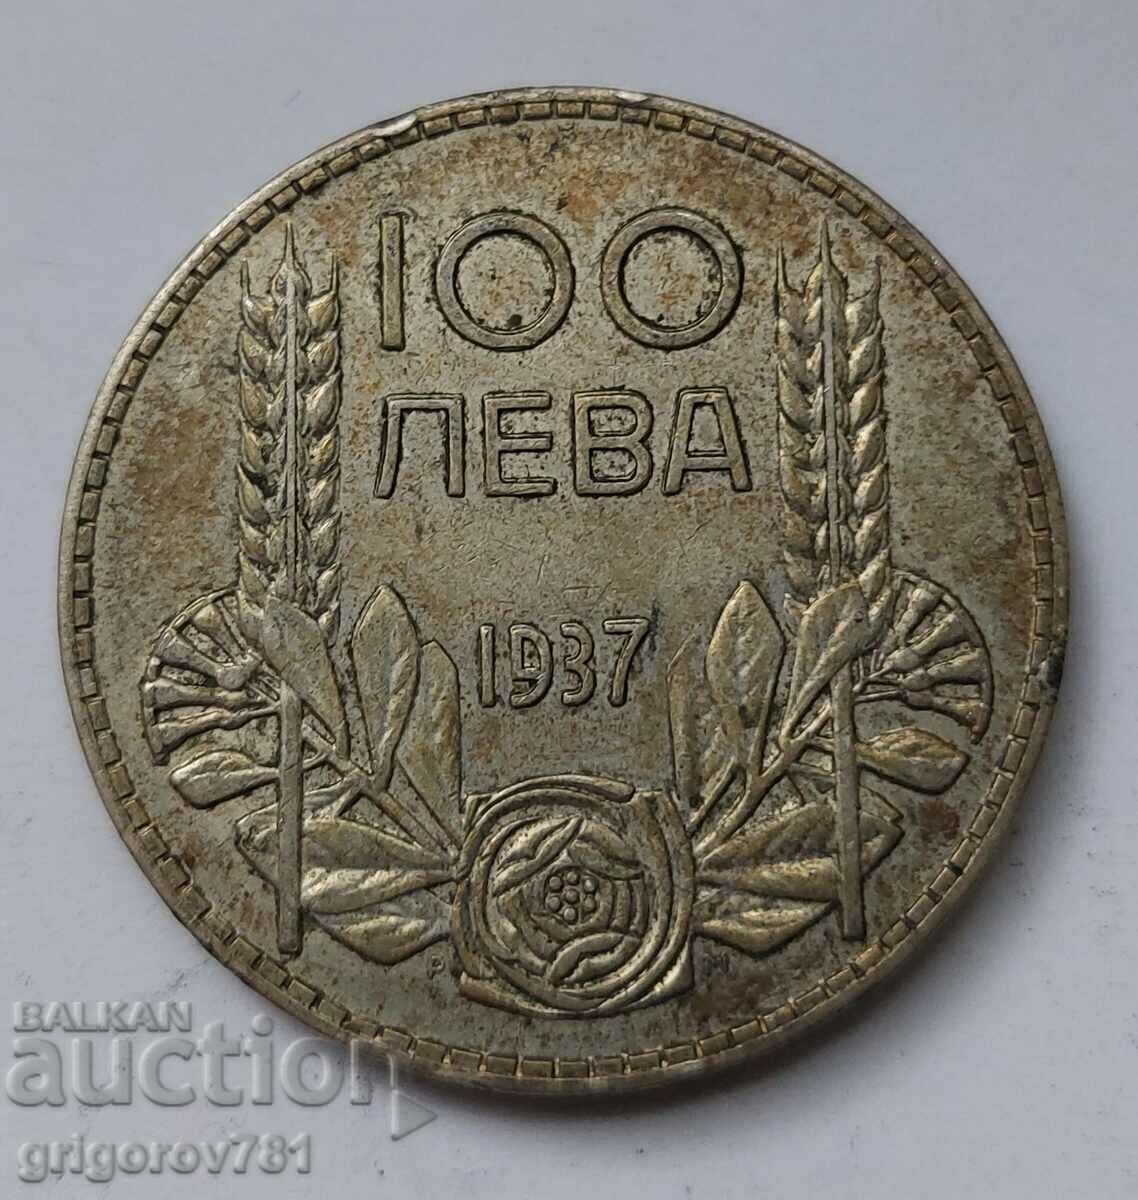 Ασήμι 100 λέβα Βουλγαρία 1937 - ασημένιο νόμισμα #25